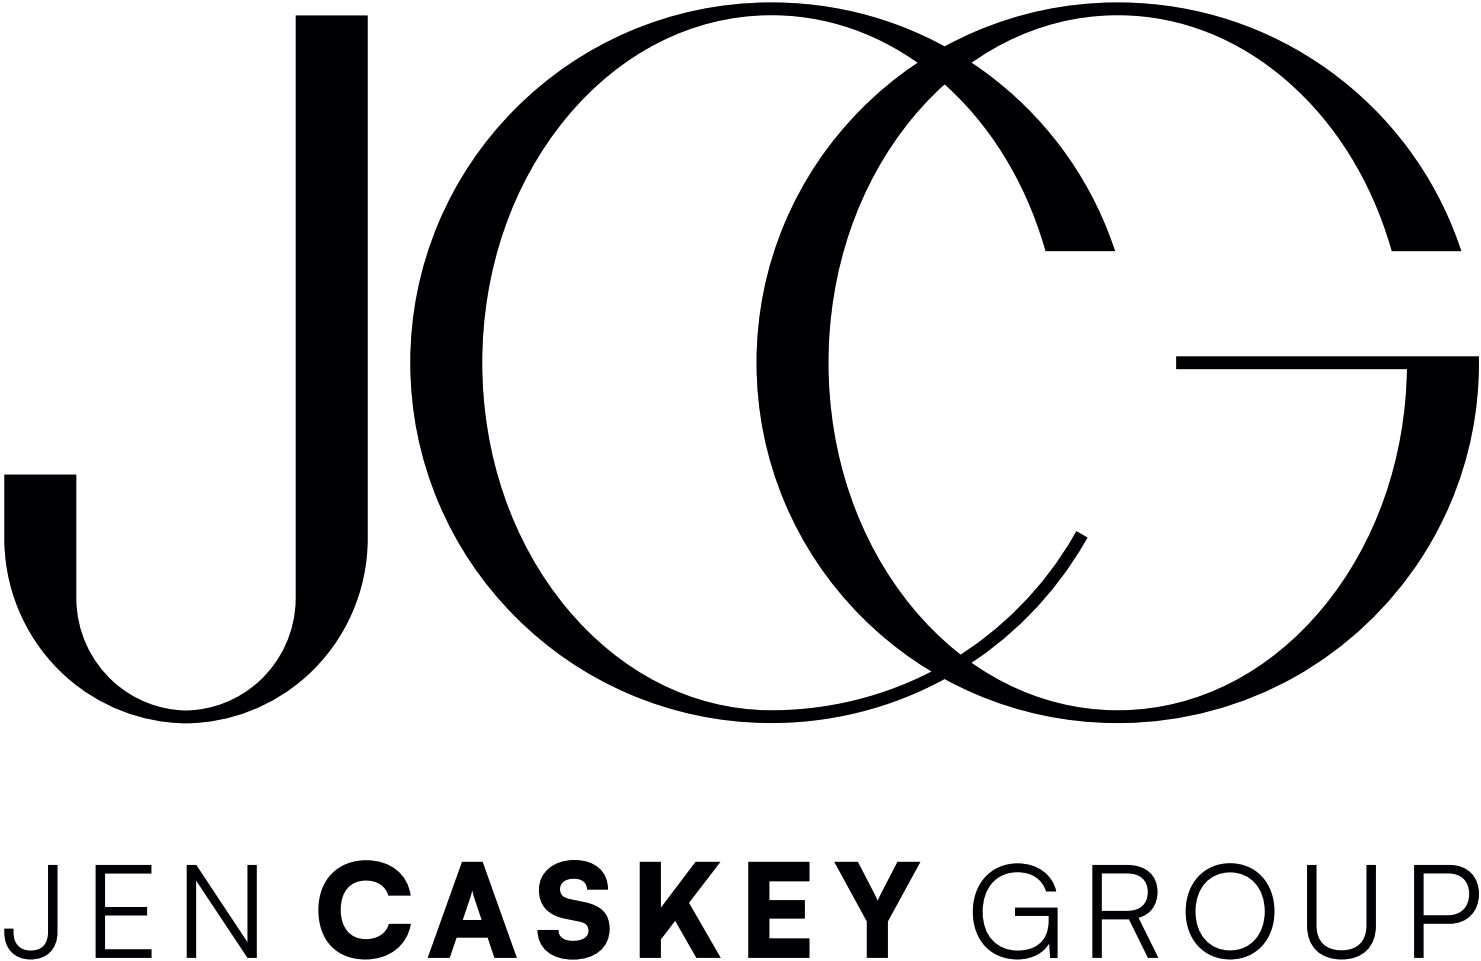 Jen Caskey Group